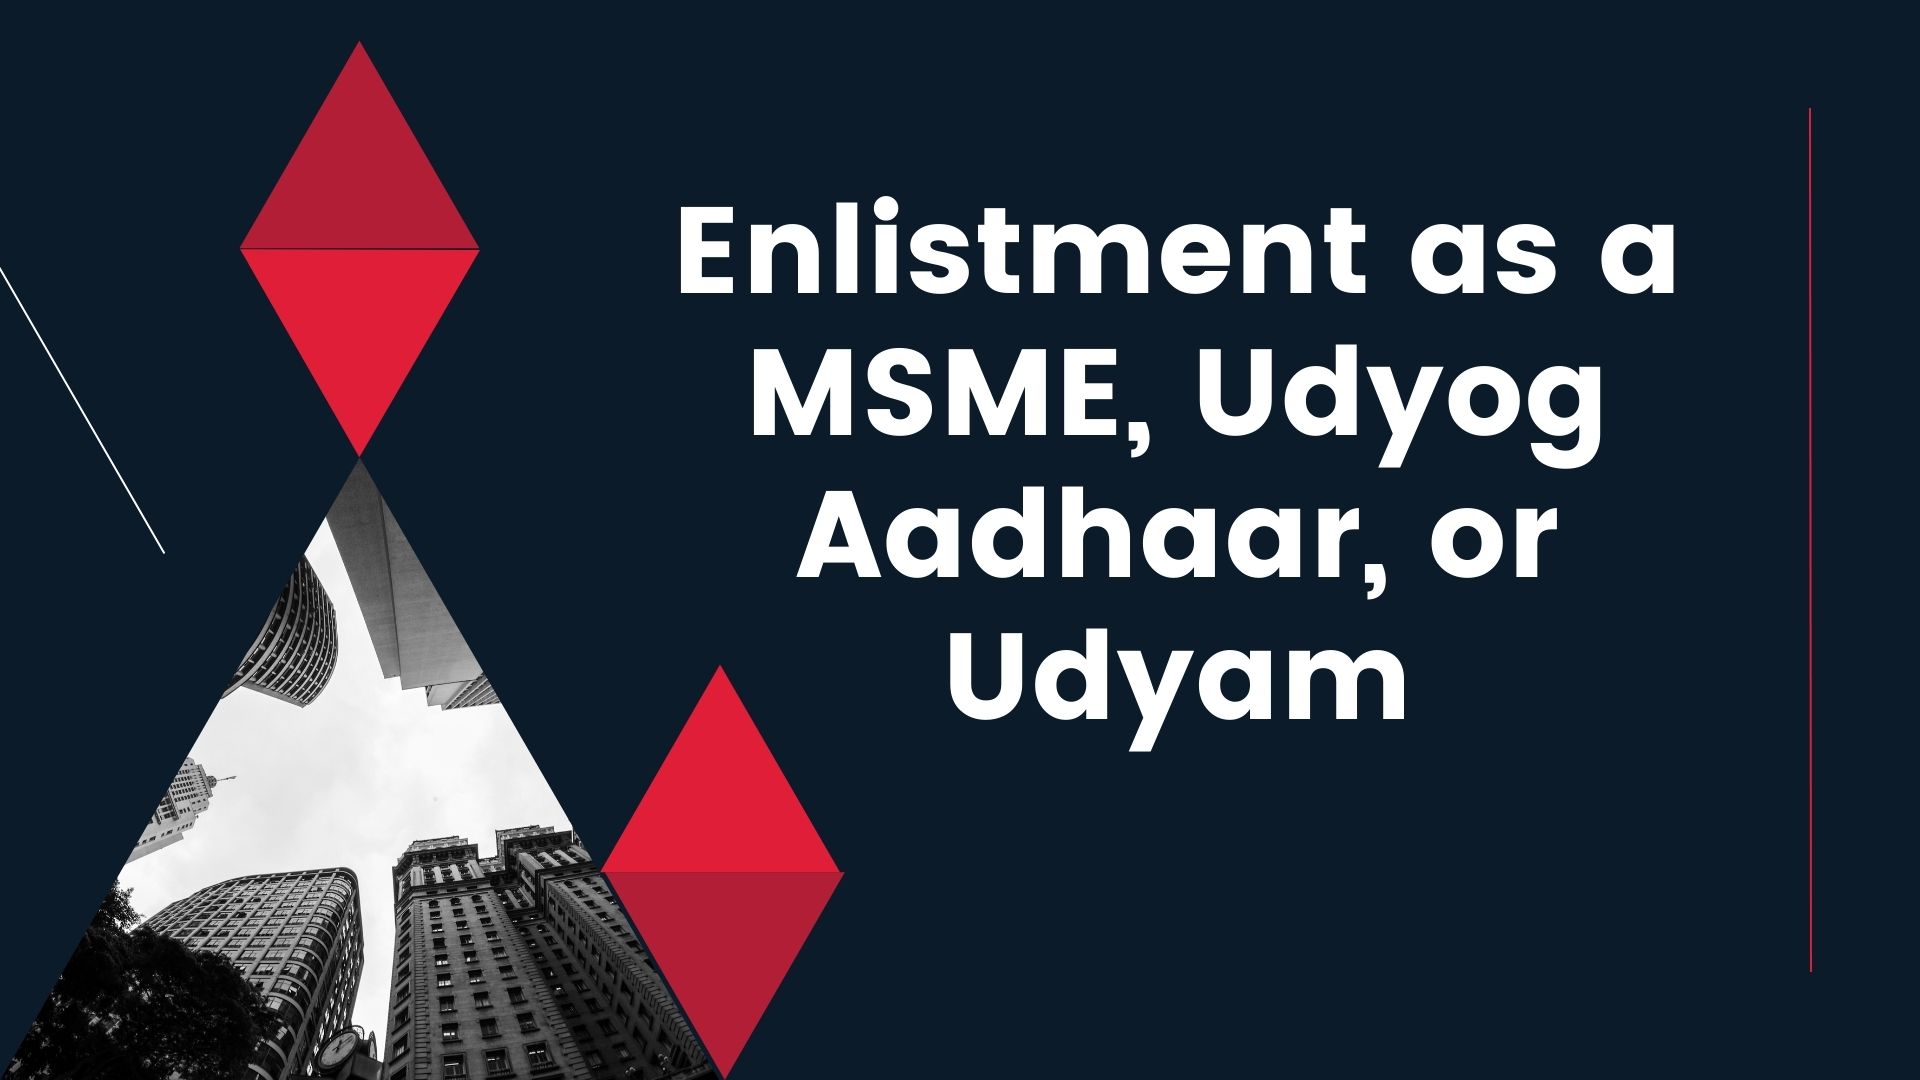 Enlistment as a MSME, Udyog Aadhaar, or Udyam